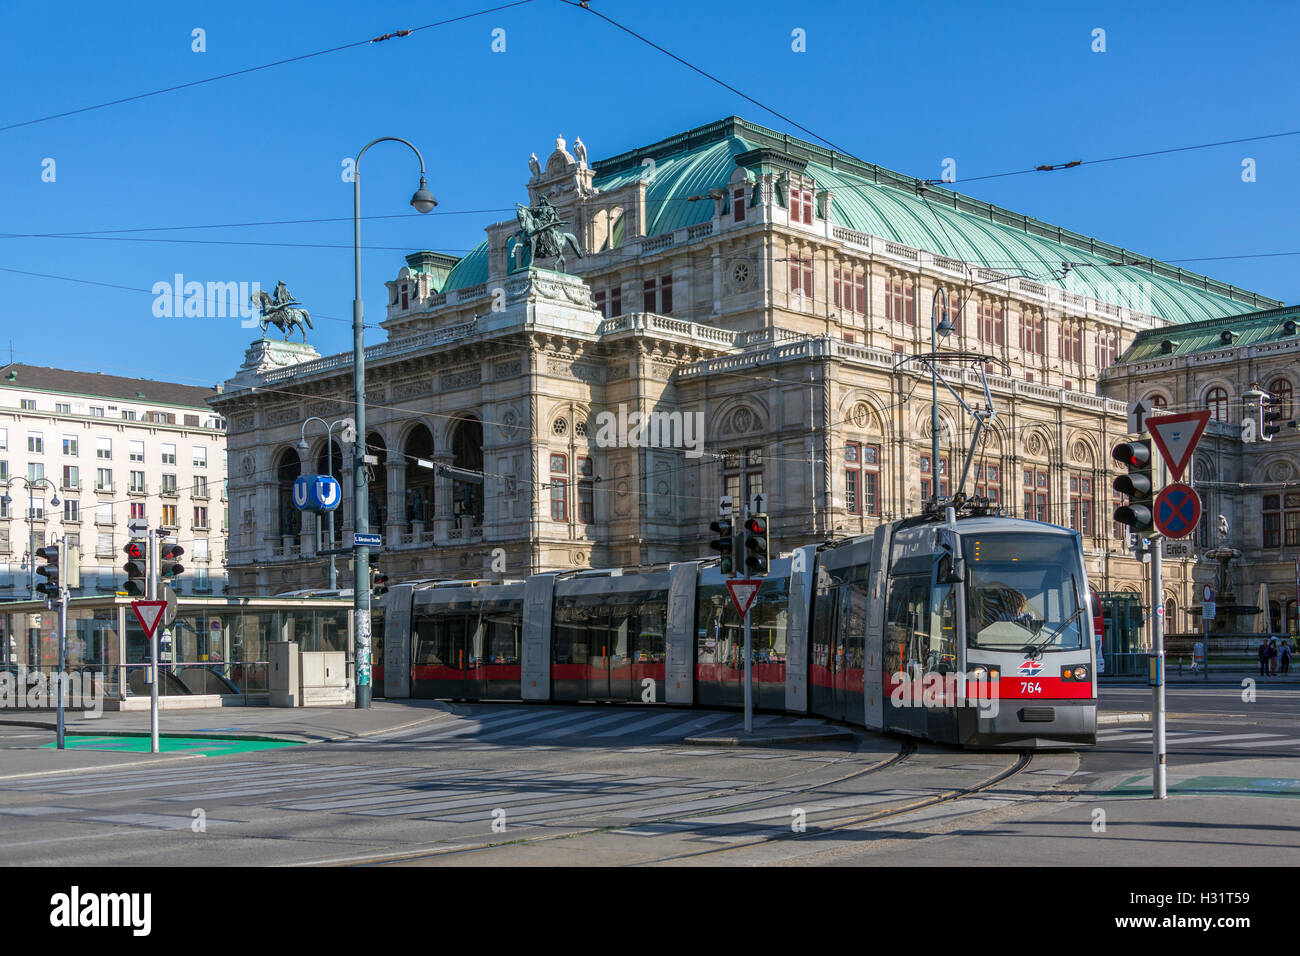 Le tram à proximité de l'Opéra national de Vienne (Wiener Staatsoper) dans la ville de Vienne en Autriche. Banque D'Images